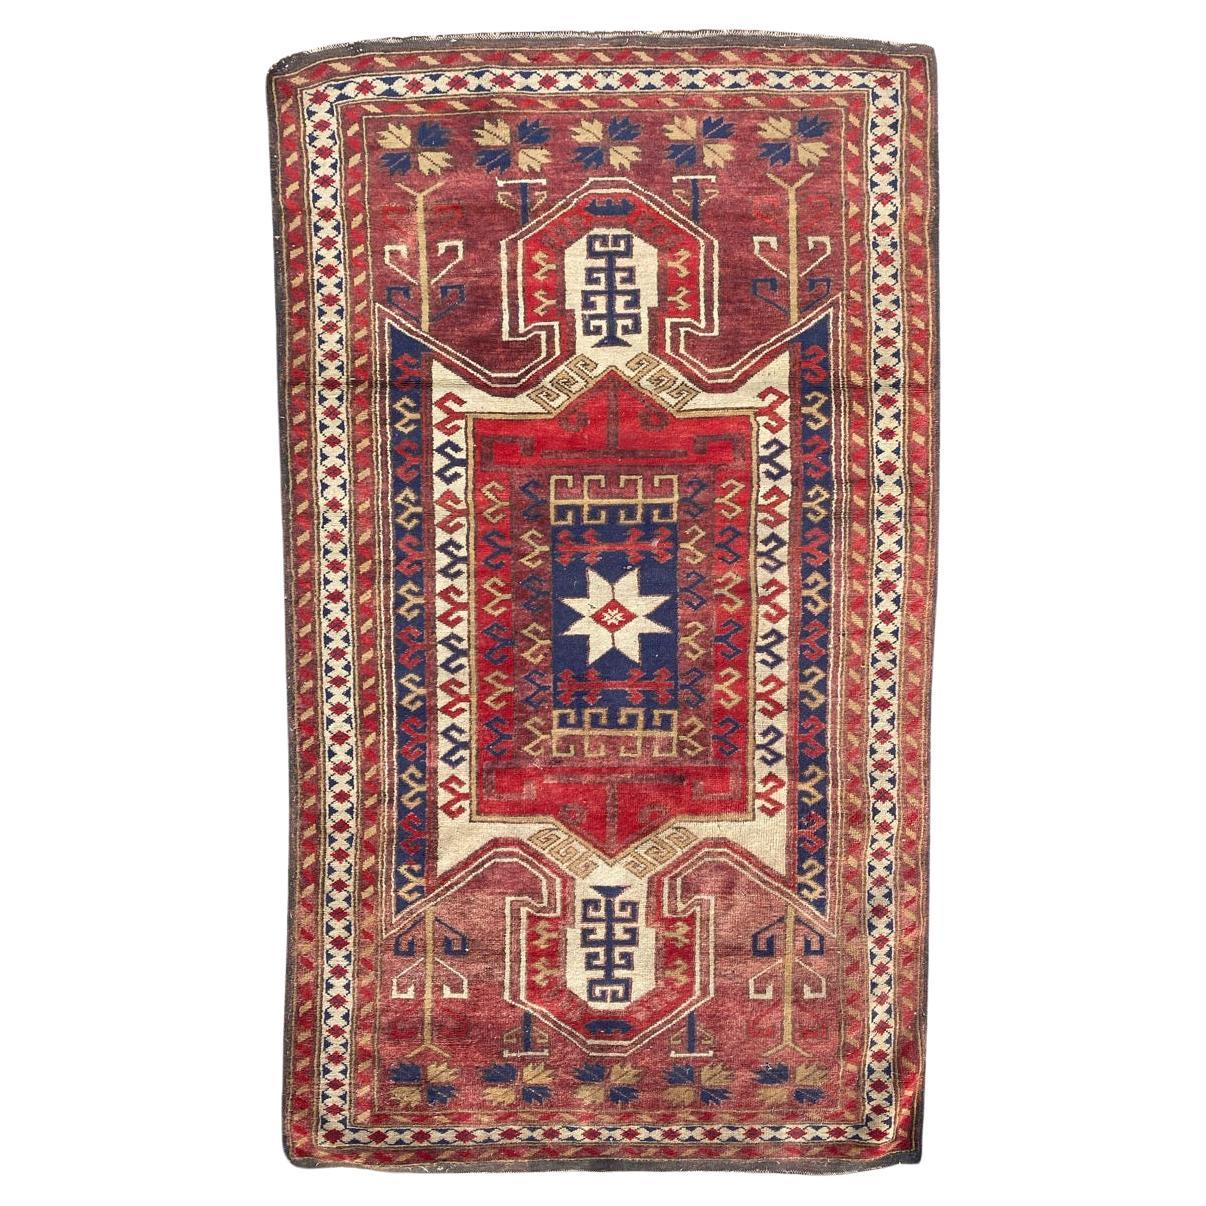 Bobyrug's Hübscher Türkischer Vintage-Teppich